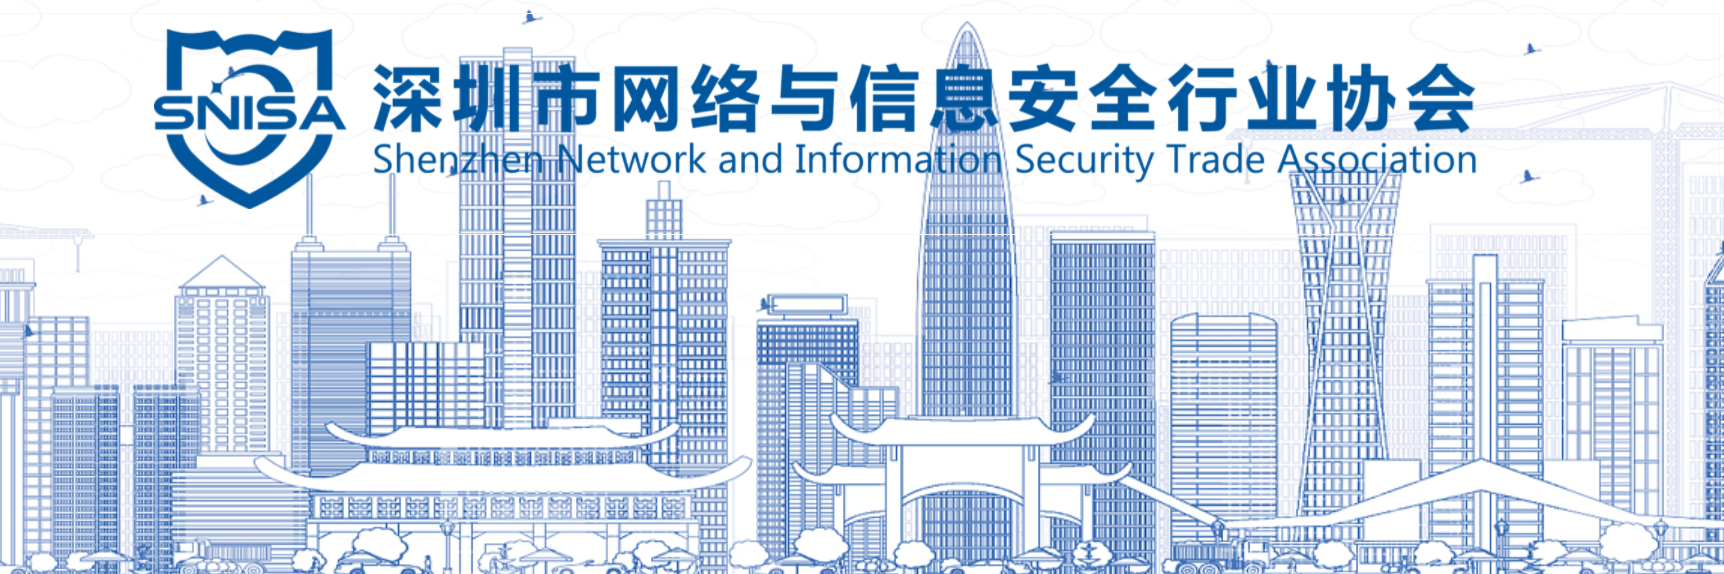 青藤云安全加入深圳市网络与信息安全行业协会